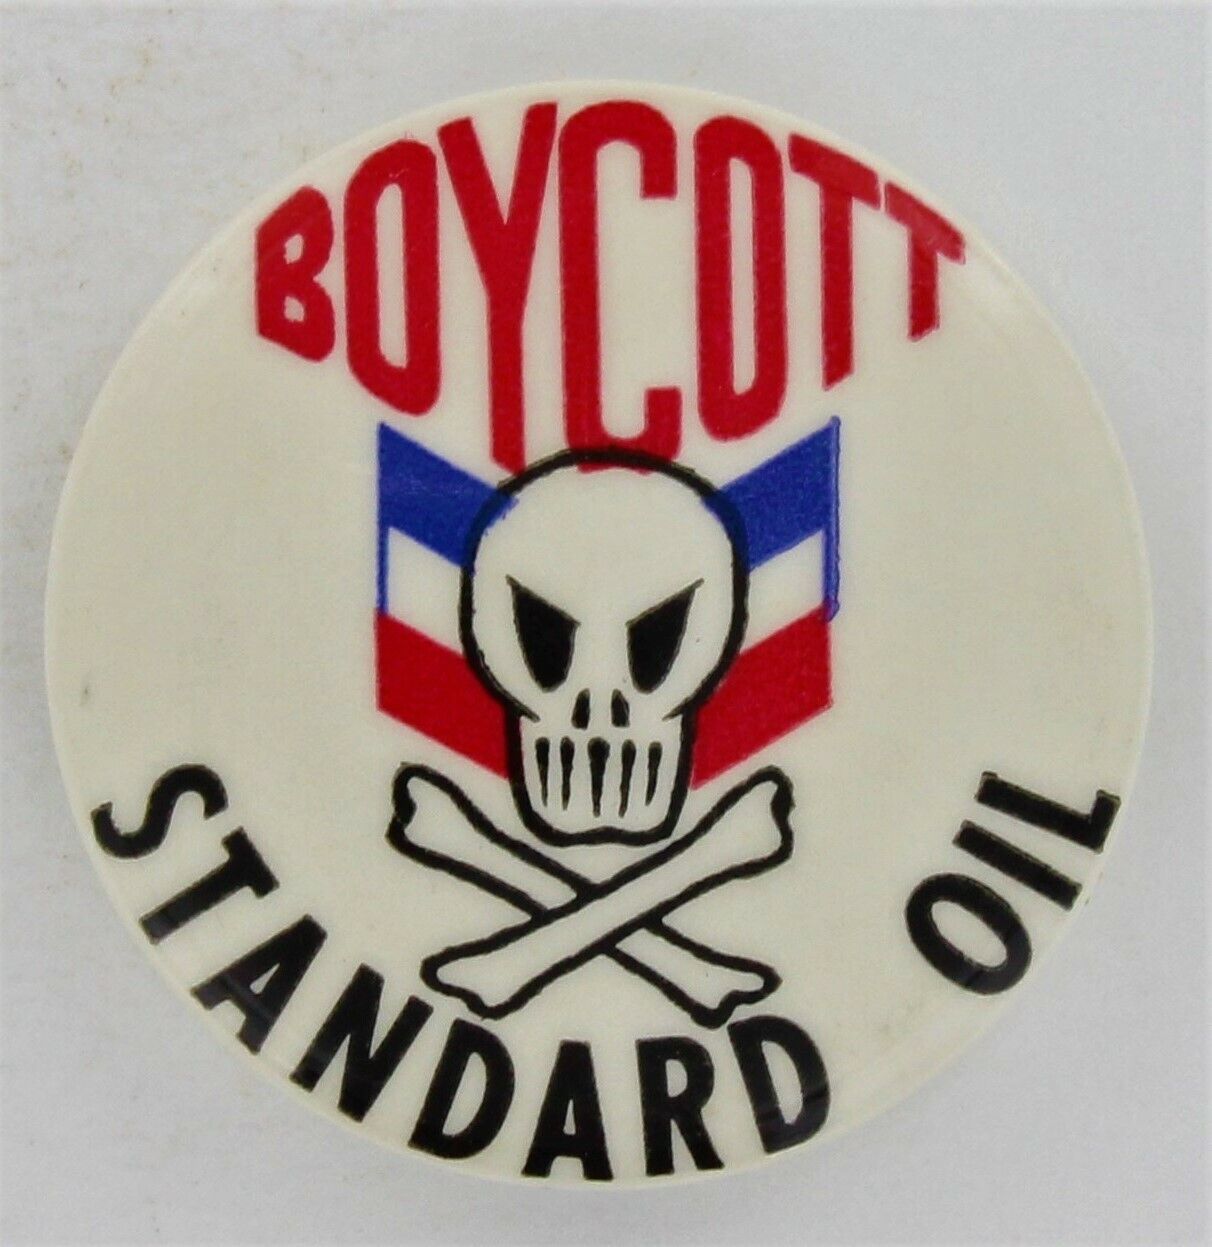 SFSU Strike 1969 Boycott Standard Oil OCAW Radical Union SDS UC Berkeley P1002